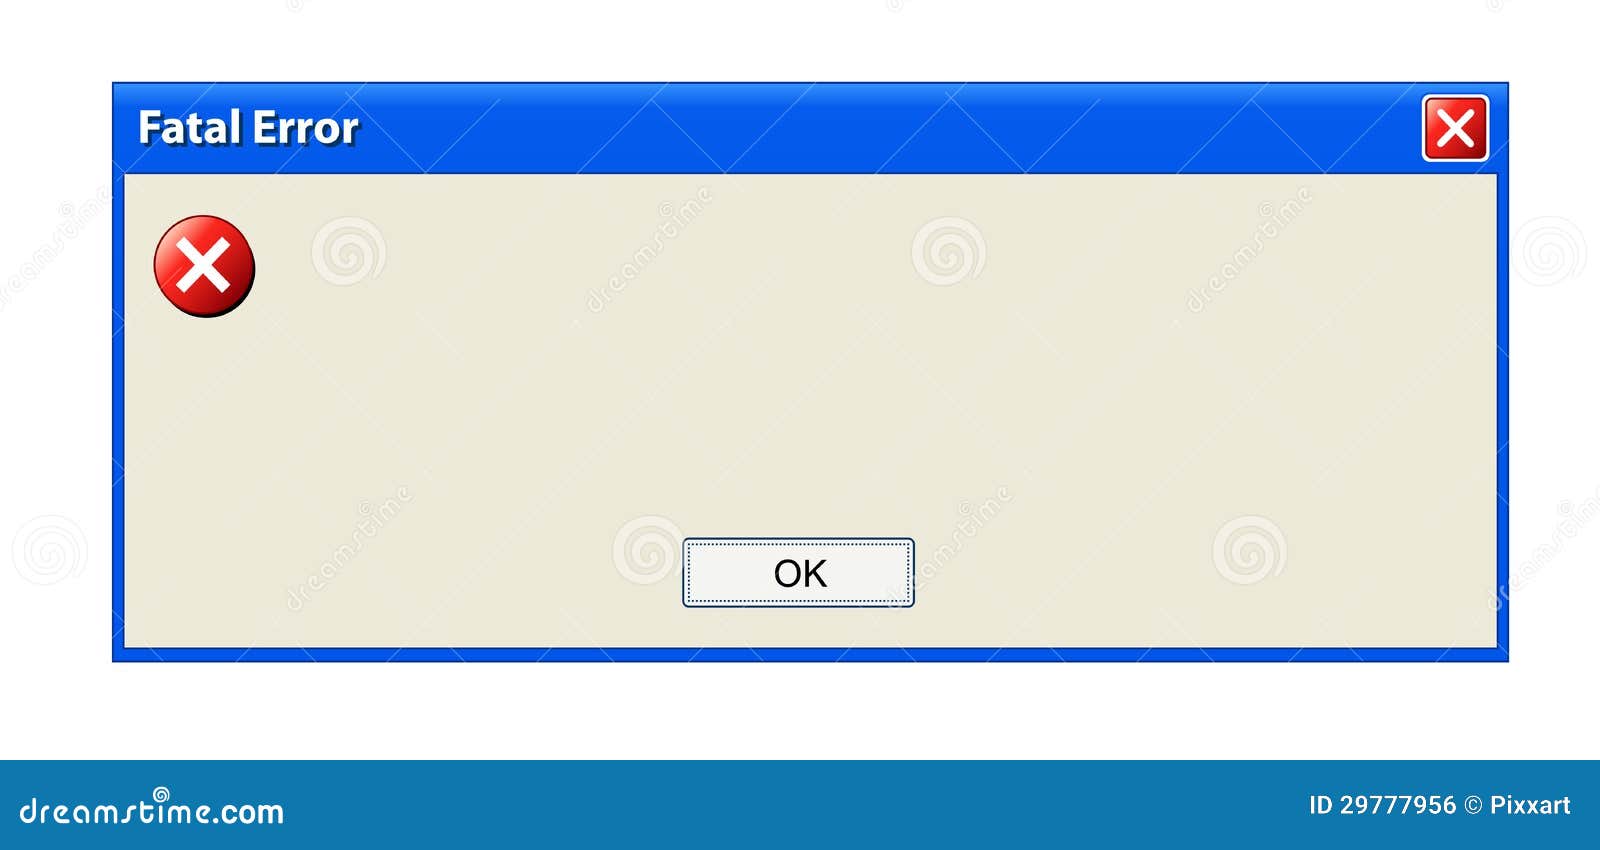 error pop up window